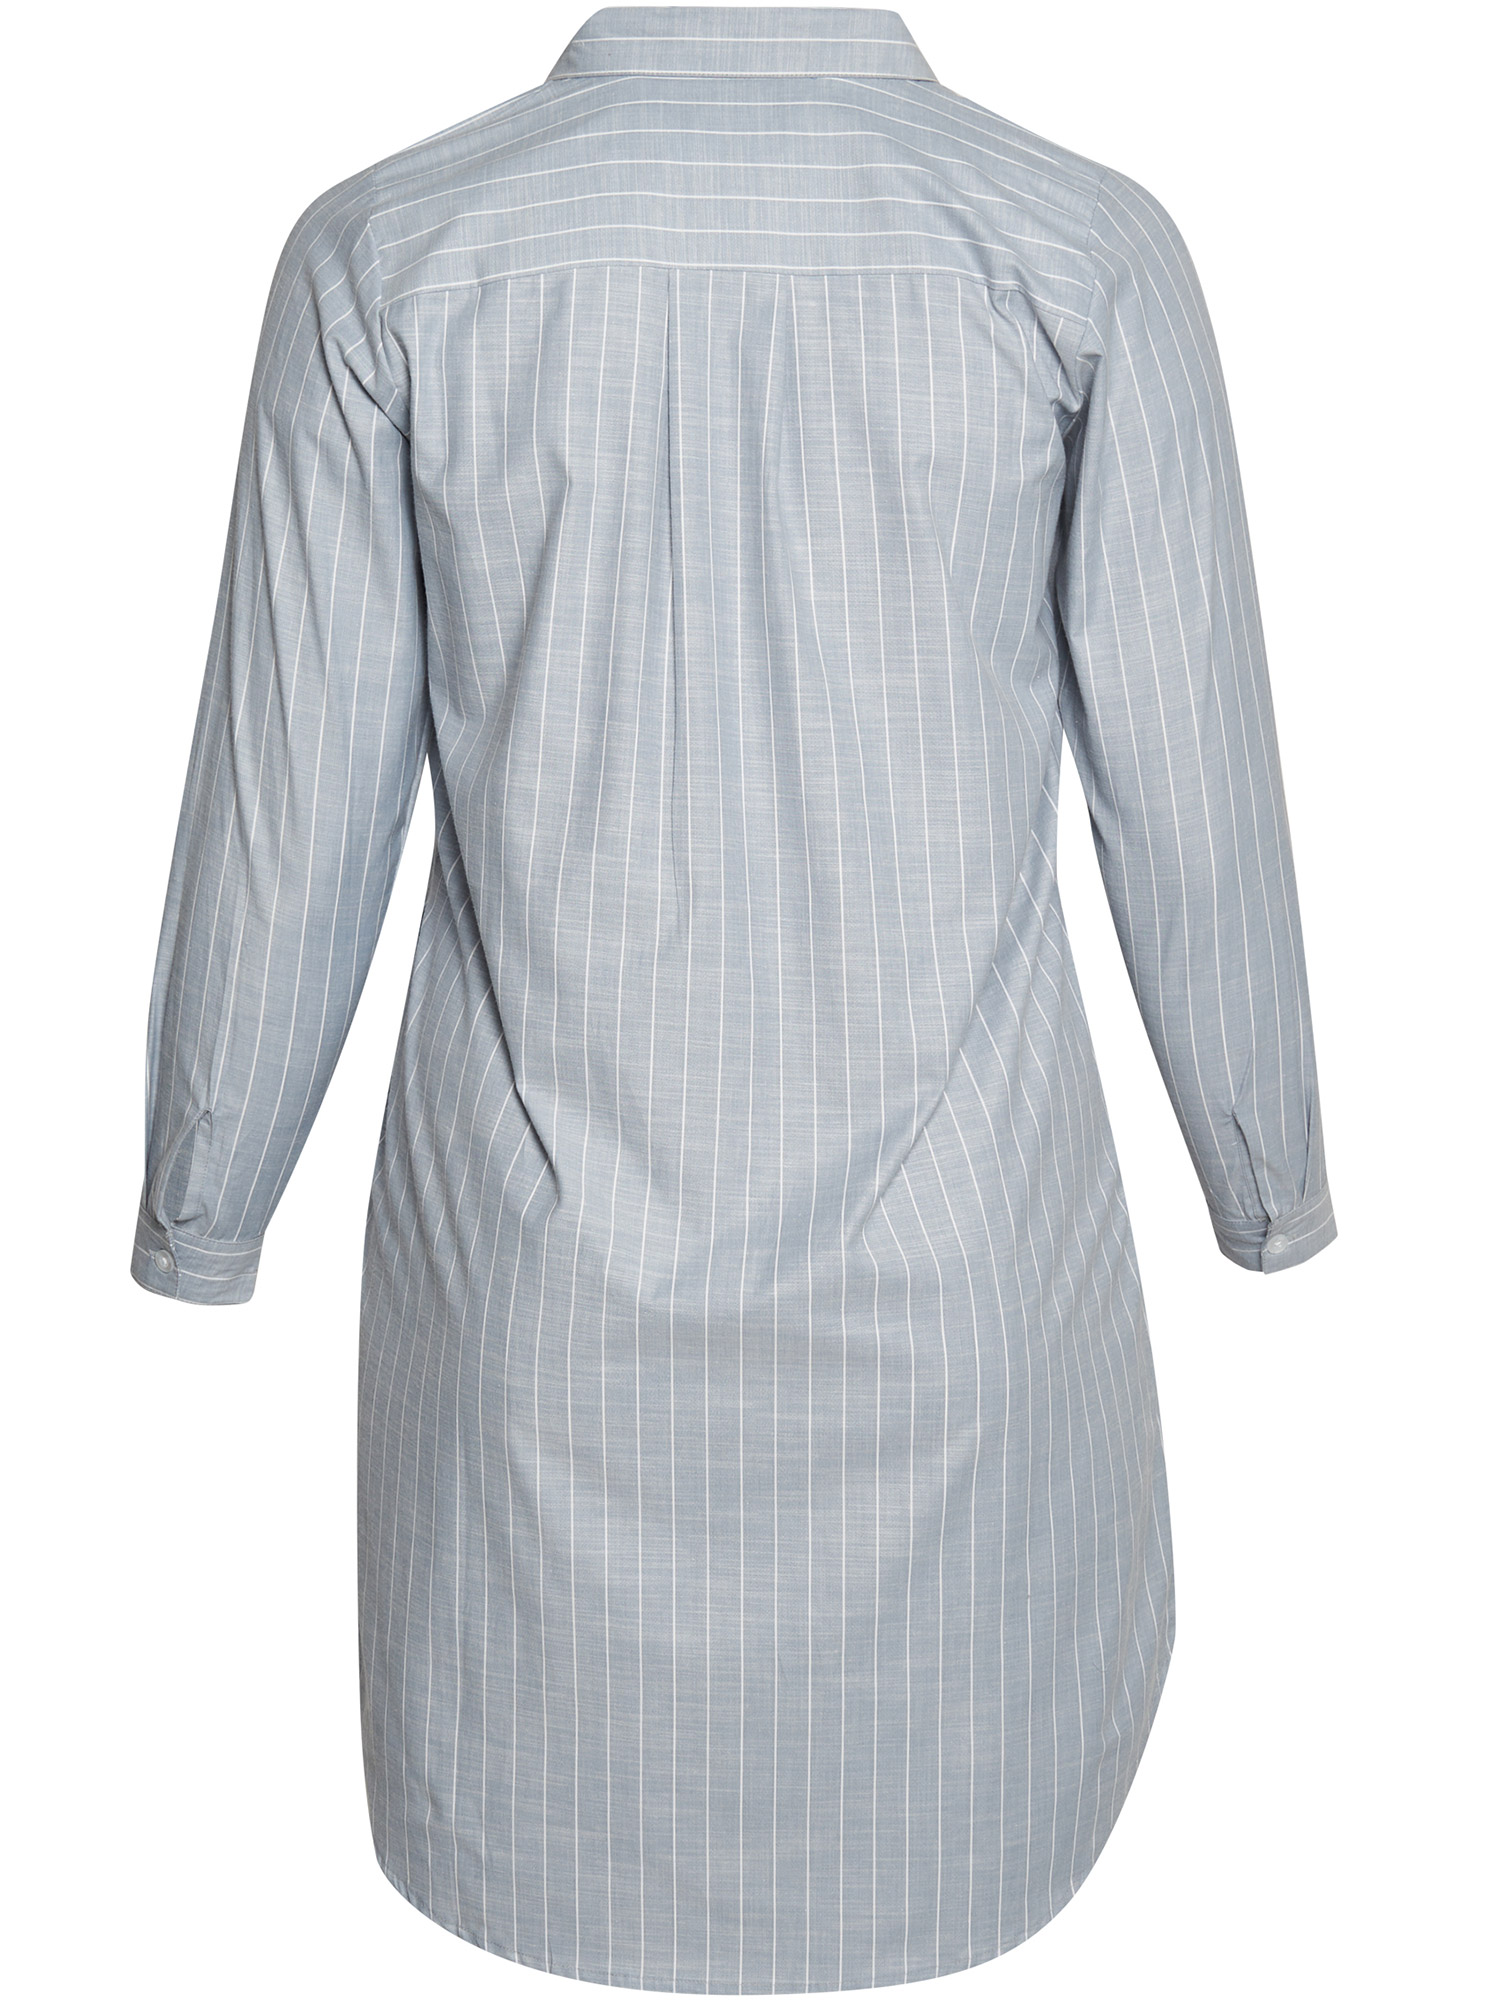 Norwalk - Ljusblå skjorta med vita ränder fra Aprico